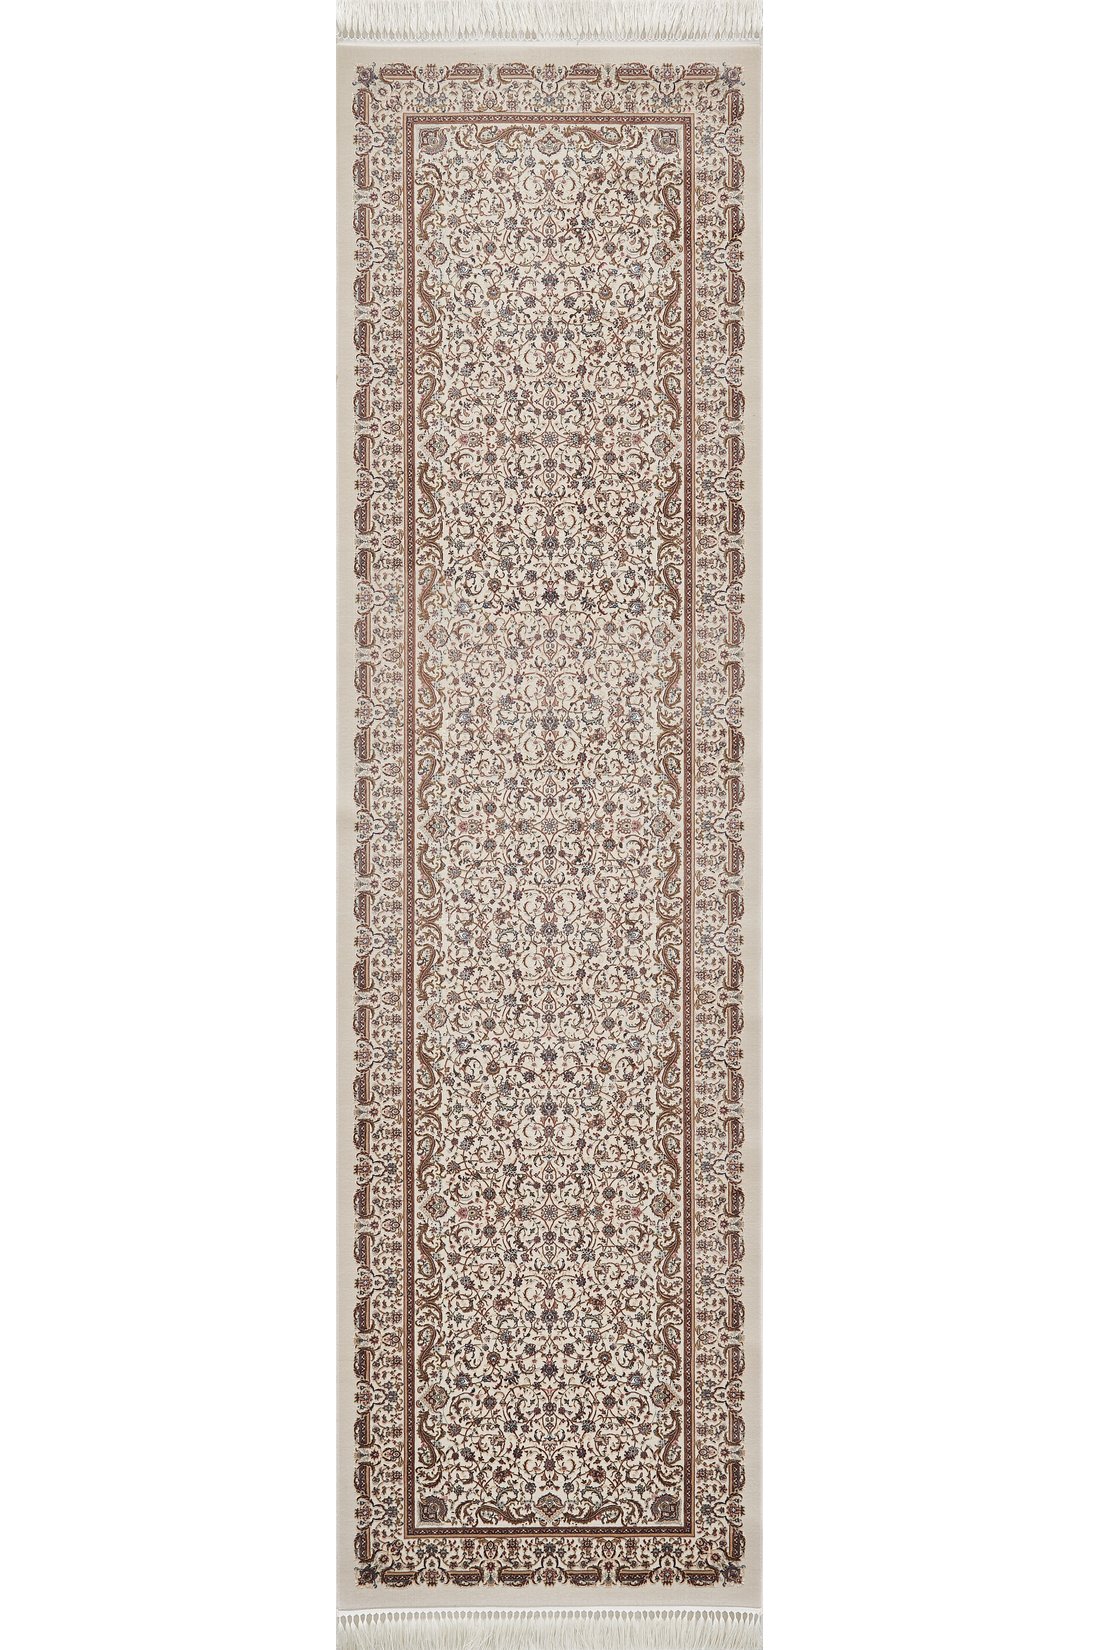 Elegant Dynasty Türkischer Teppich – 2035N 